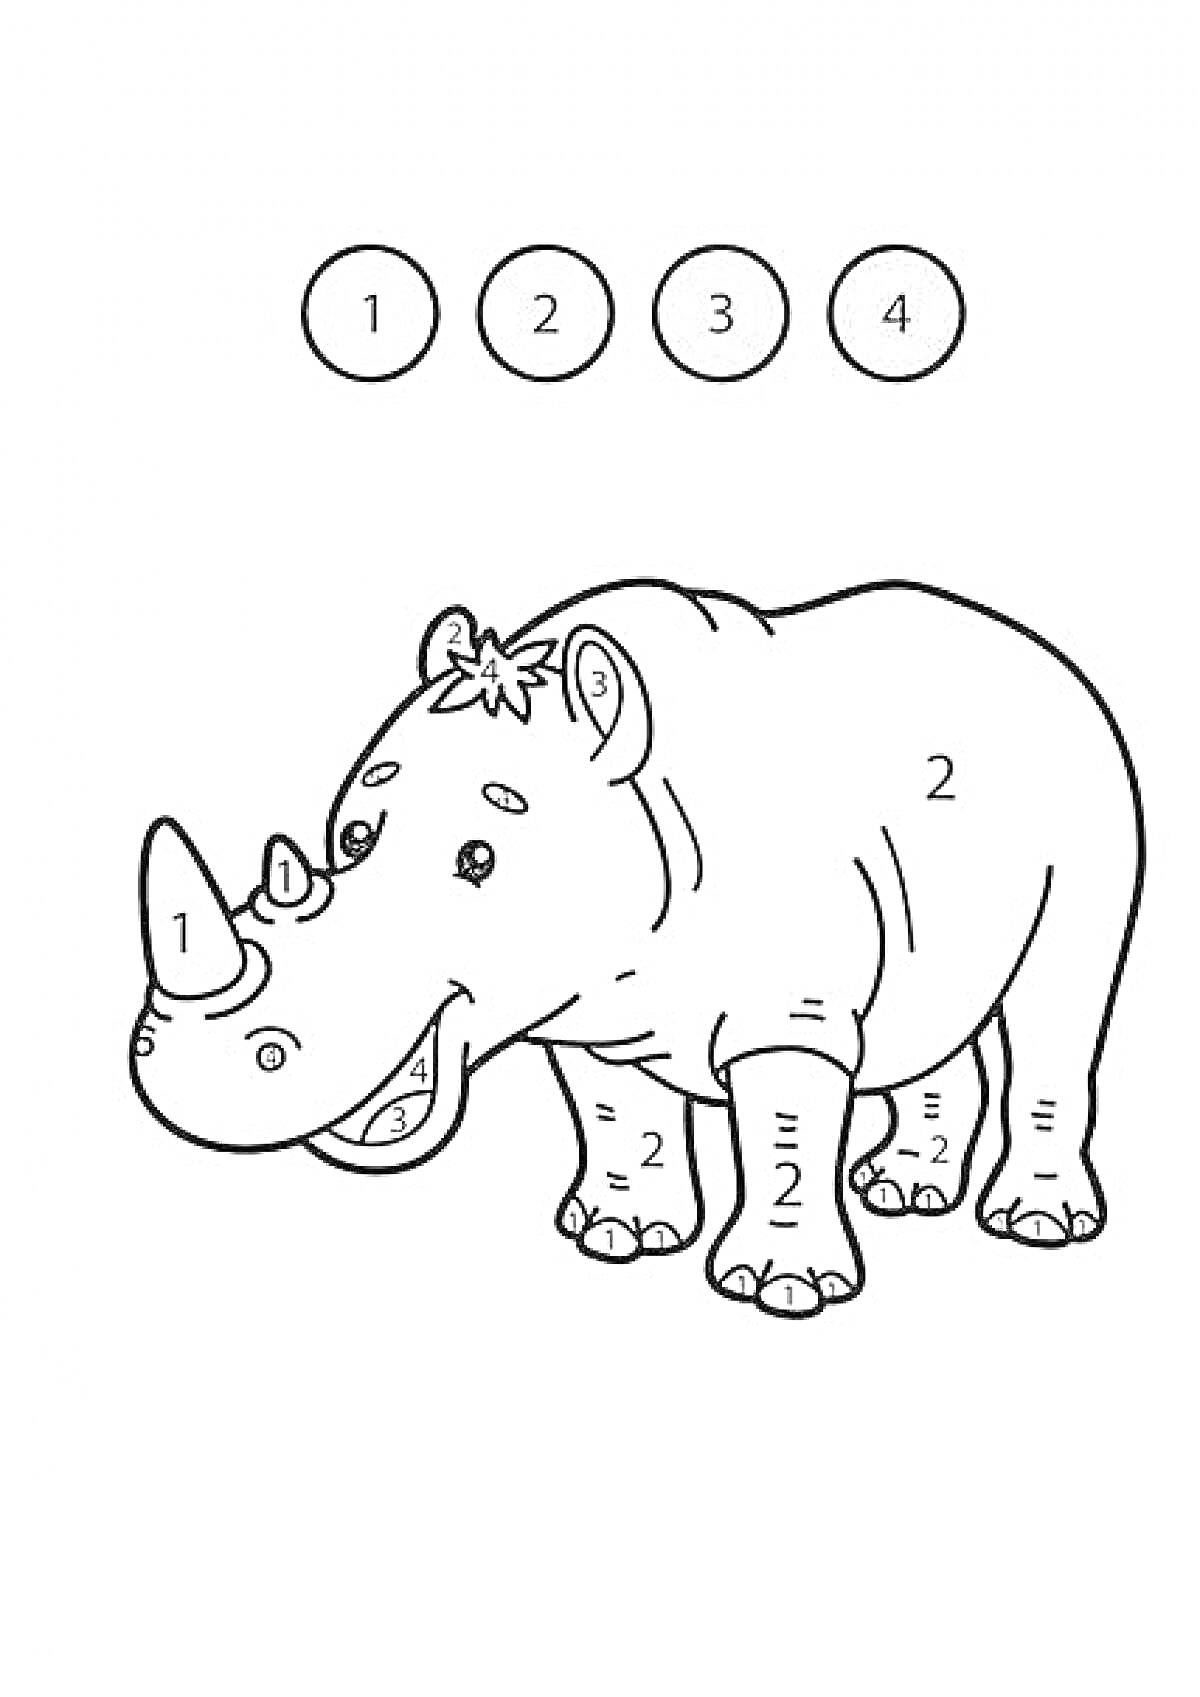 Раскраска Раскраска математическая. Носорог с обозначением чисел для выбора цвета (1 - голубой, 2 - зеленый, 3 - розовый, 4 - коричневый)